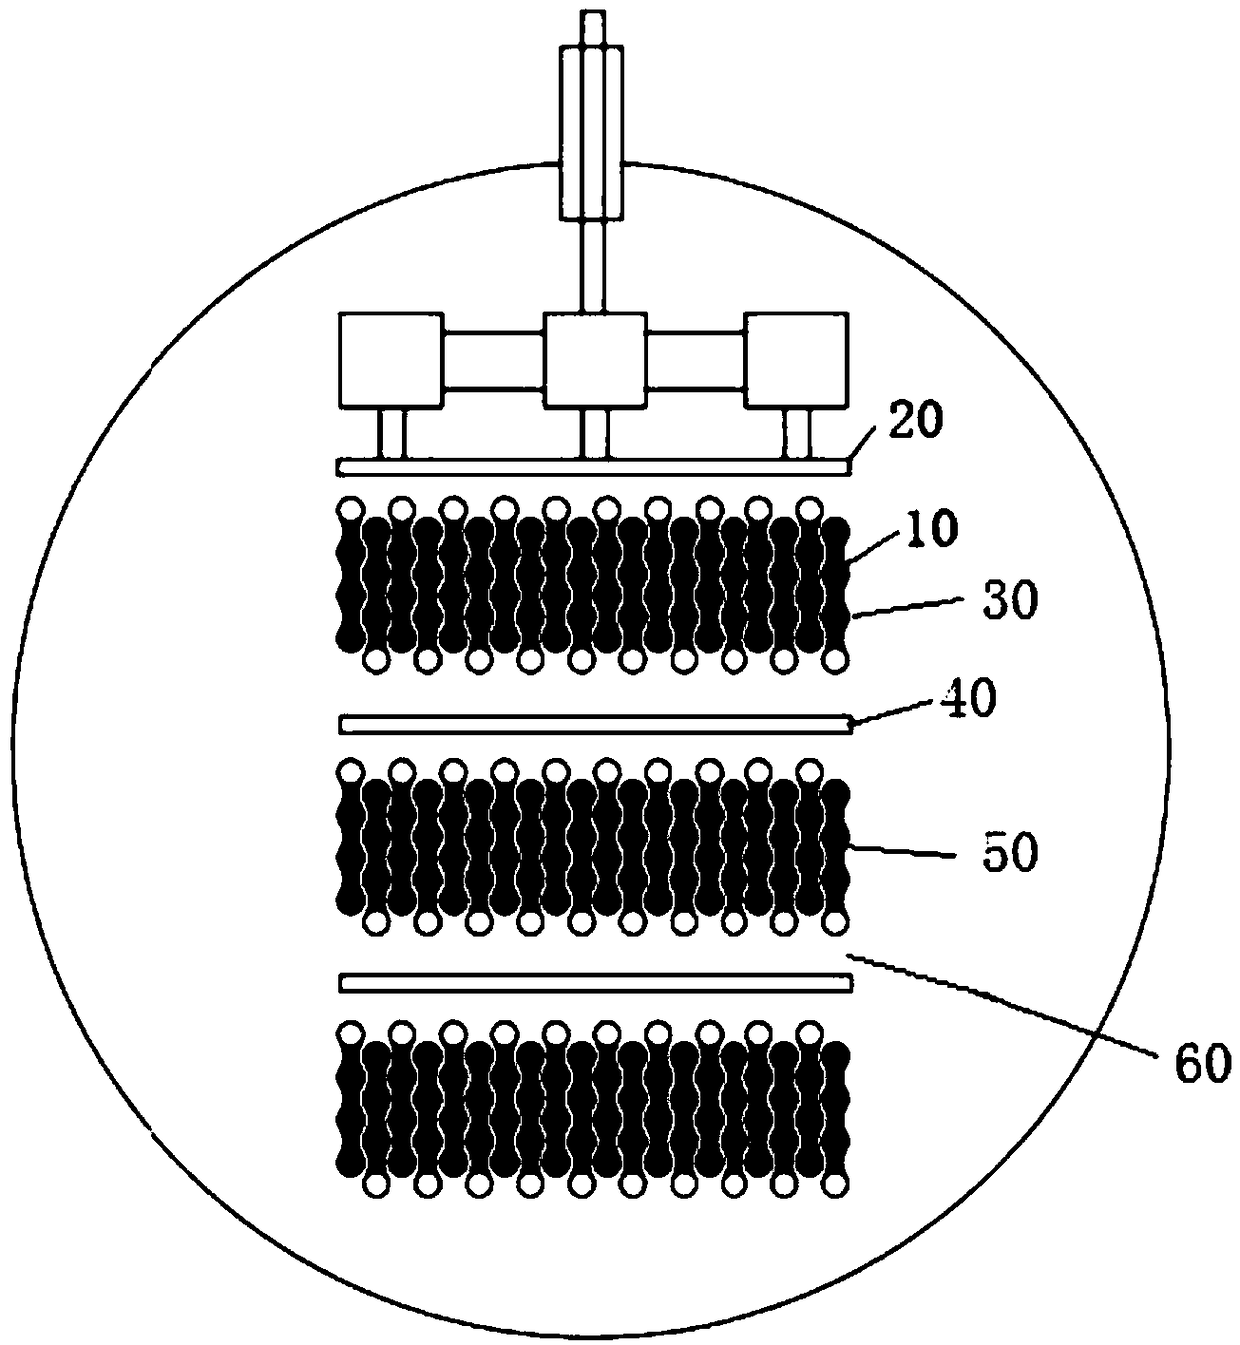 Heat exchanger for horizontal-tube falling film evaporator